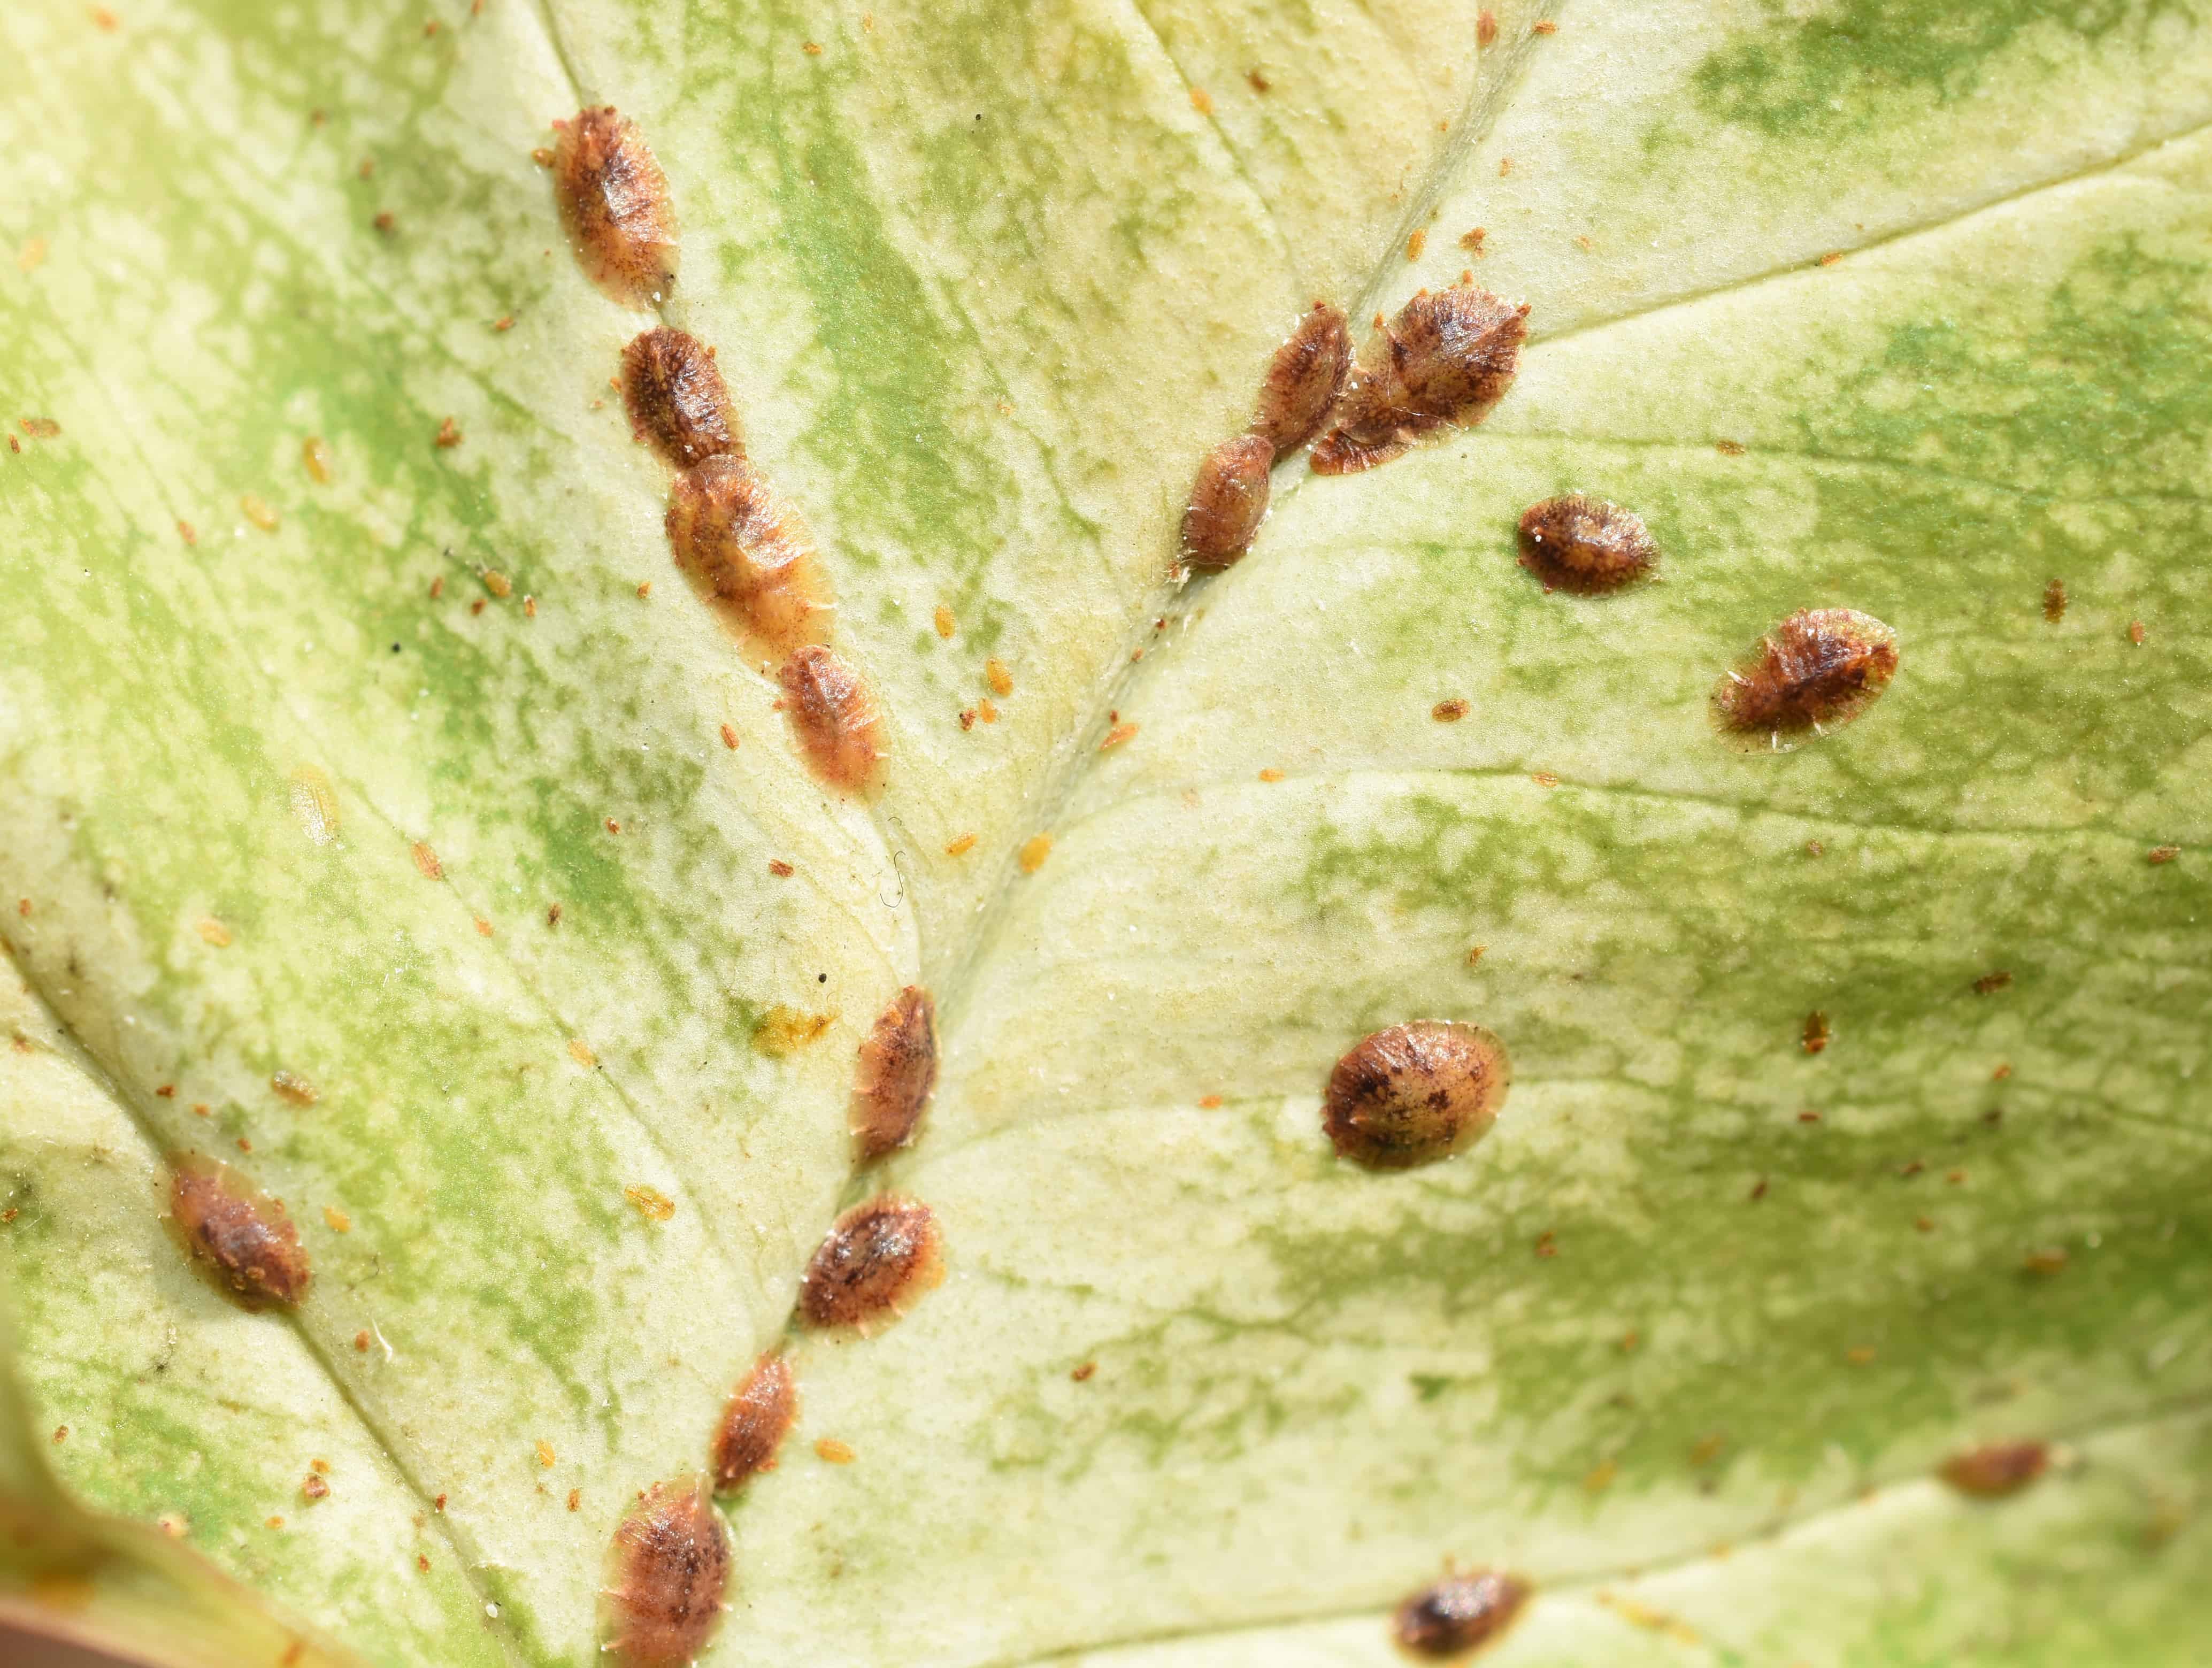 Brown scales feeding on a leaf